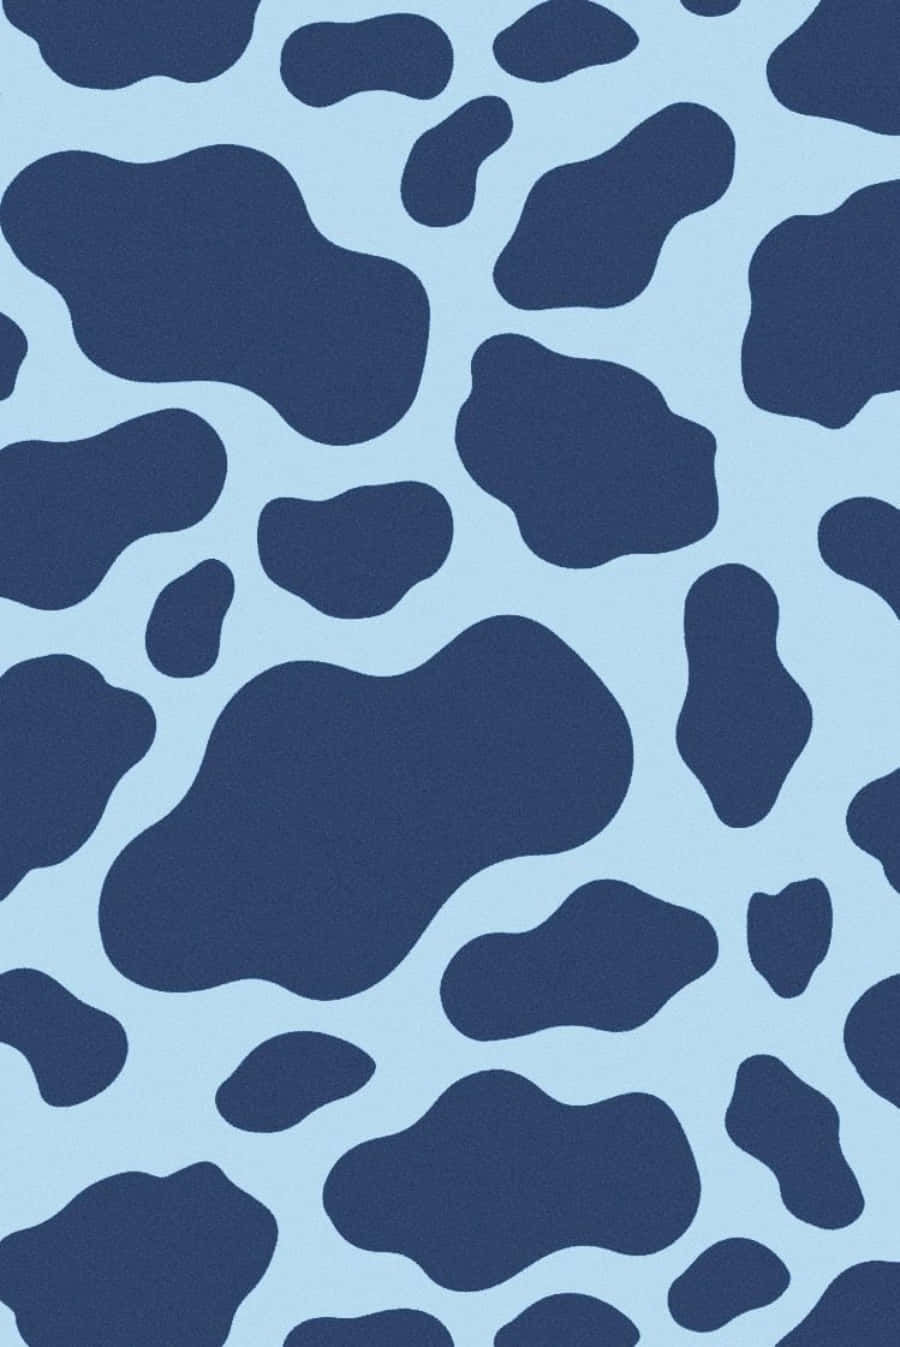 Få en stilfuld og spotted udseende med Blue Cow Print Wallpaper